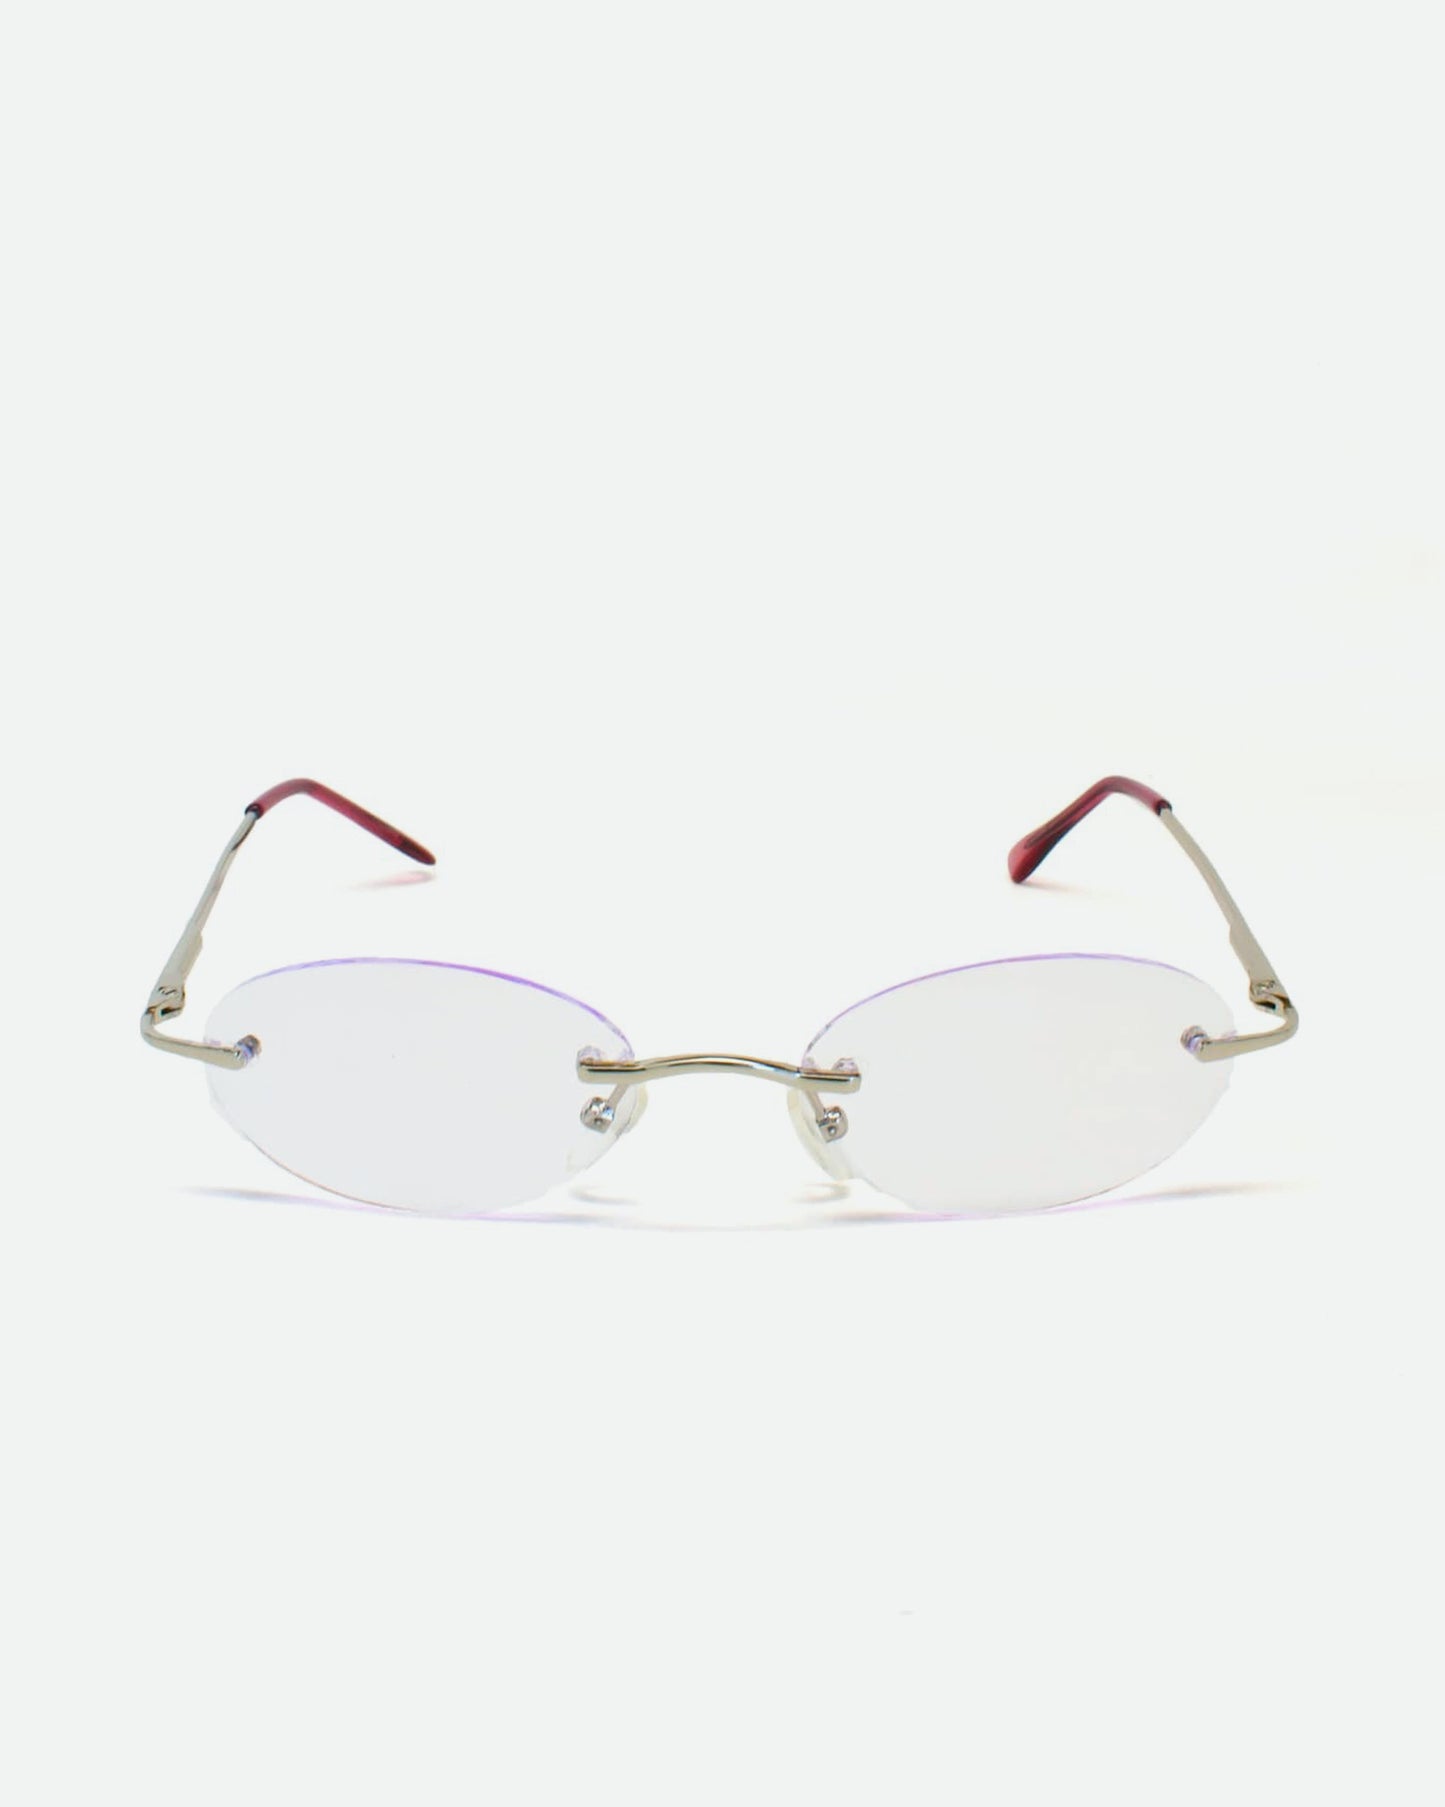 NOS 90s Frameless Glasses with Light Purple